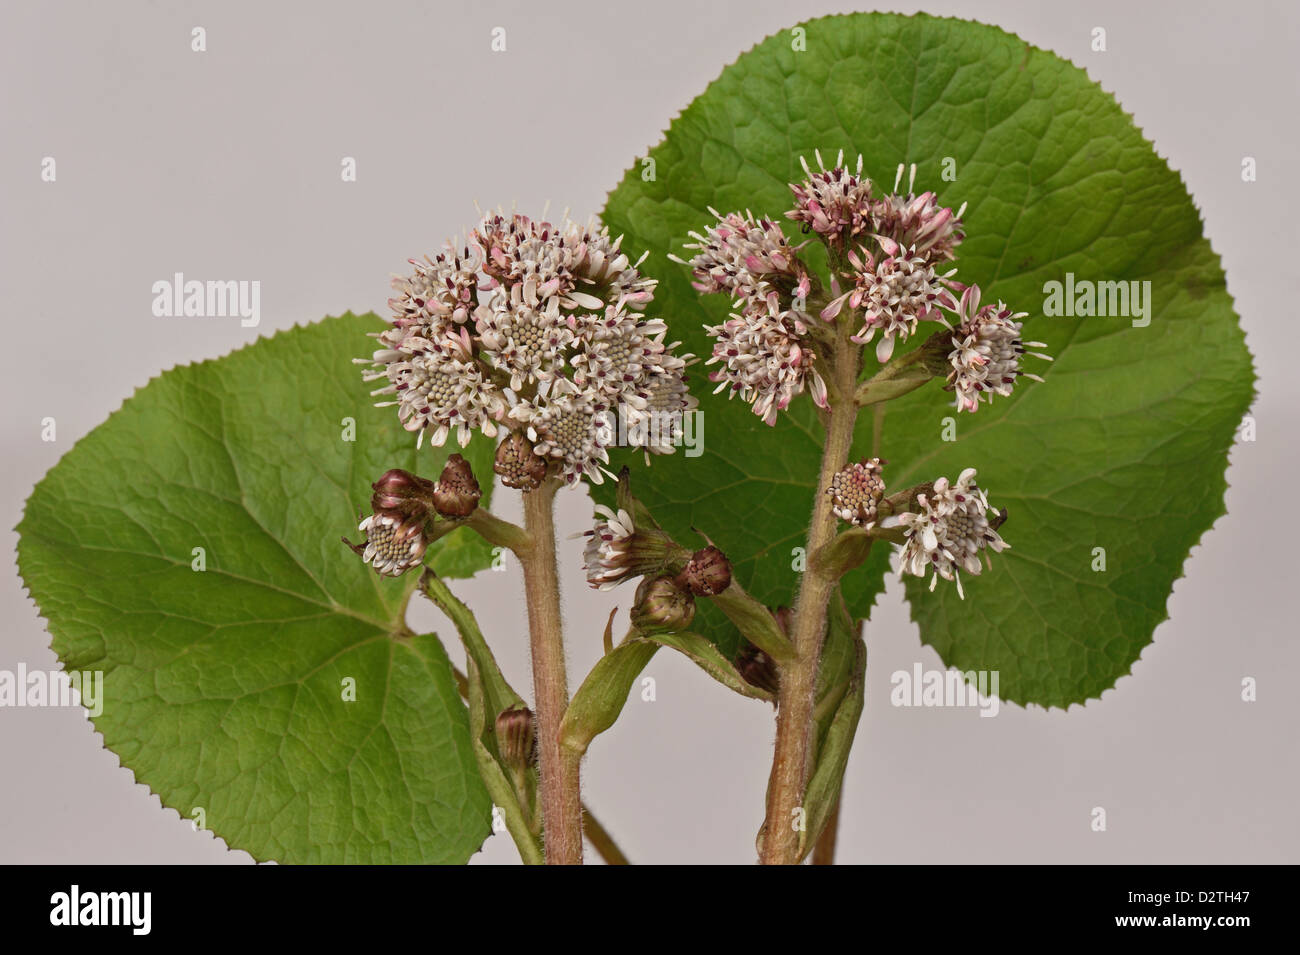 Blume-Spikes von gemeinsamen Pestwurz, Petasites Hybridus, einem frühen zusammengesetzte Blütenpflanze Stockfoto